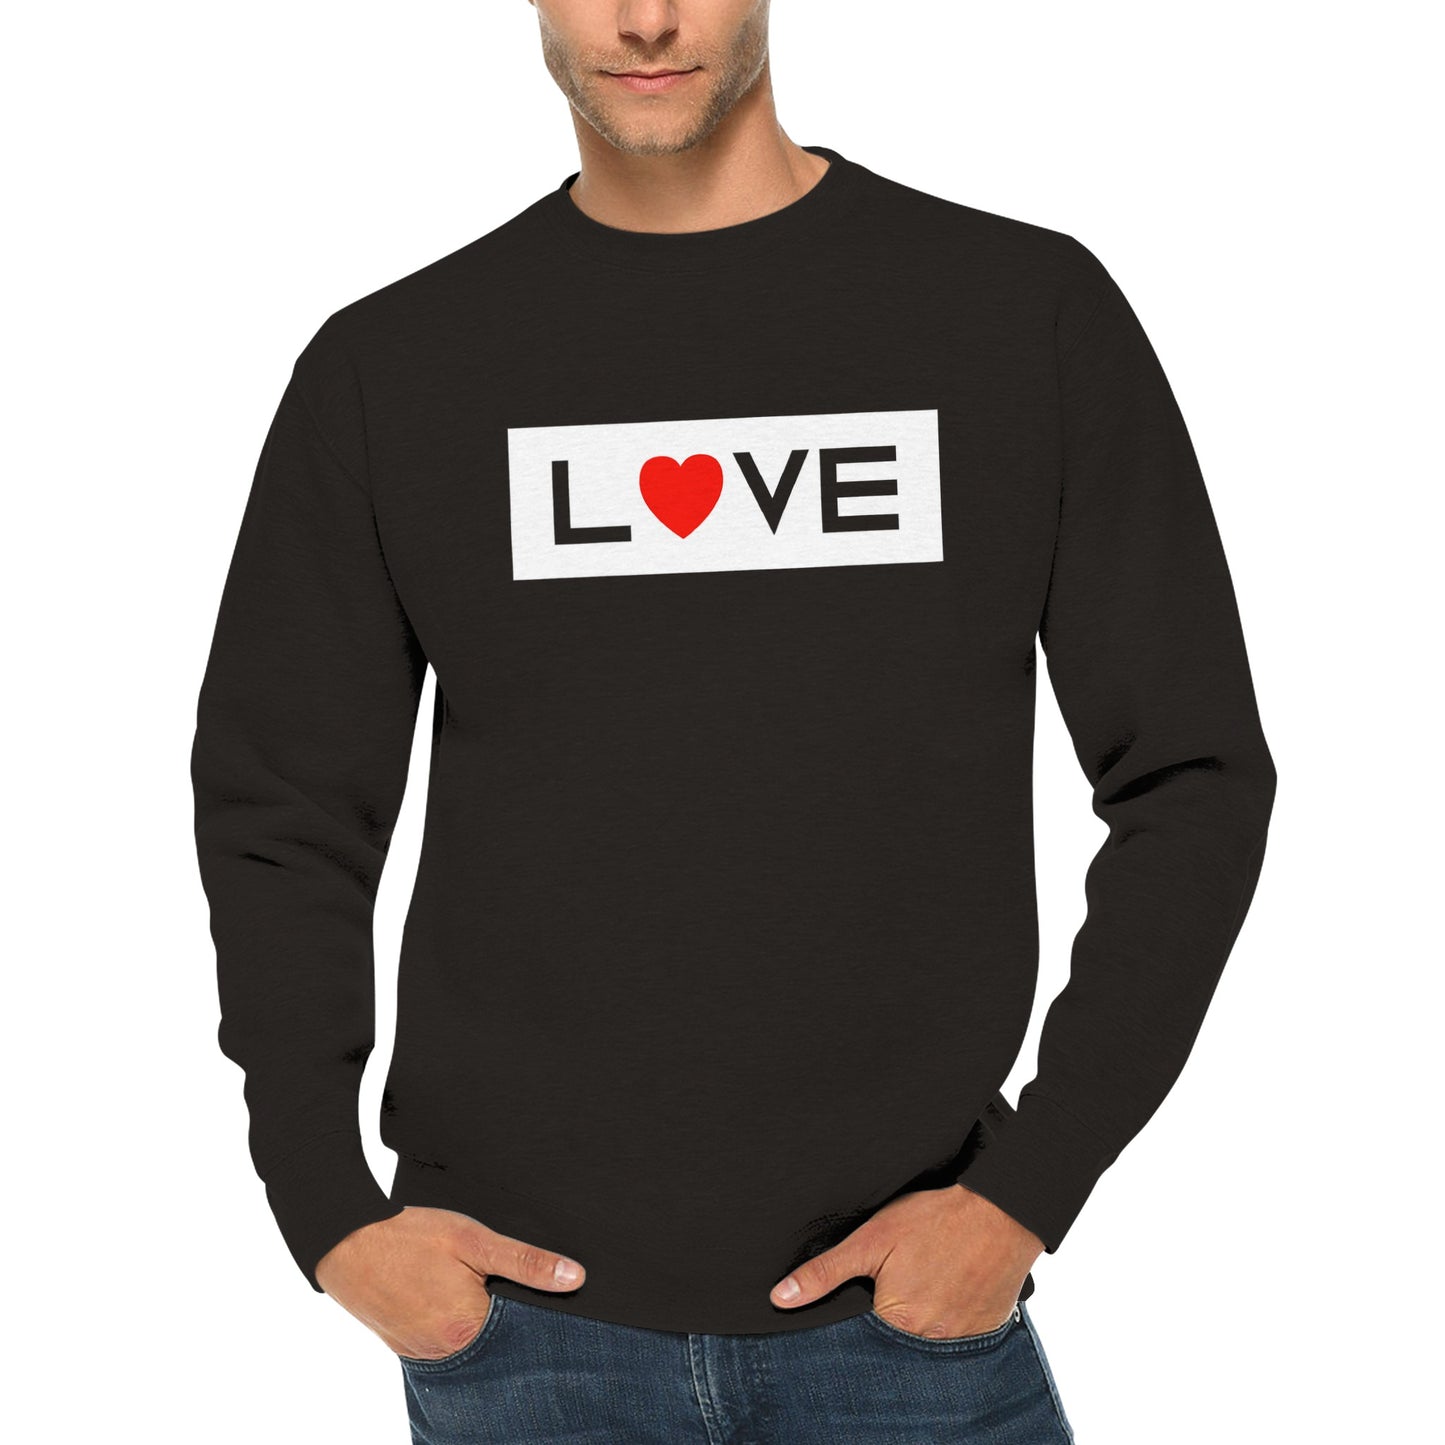 Inverse Love Sweatshirt Men's